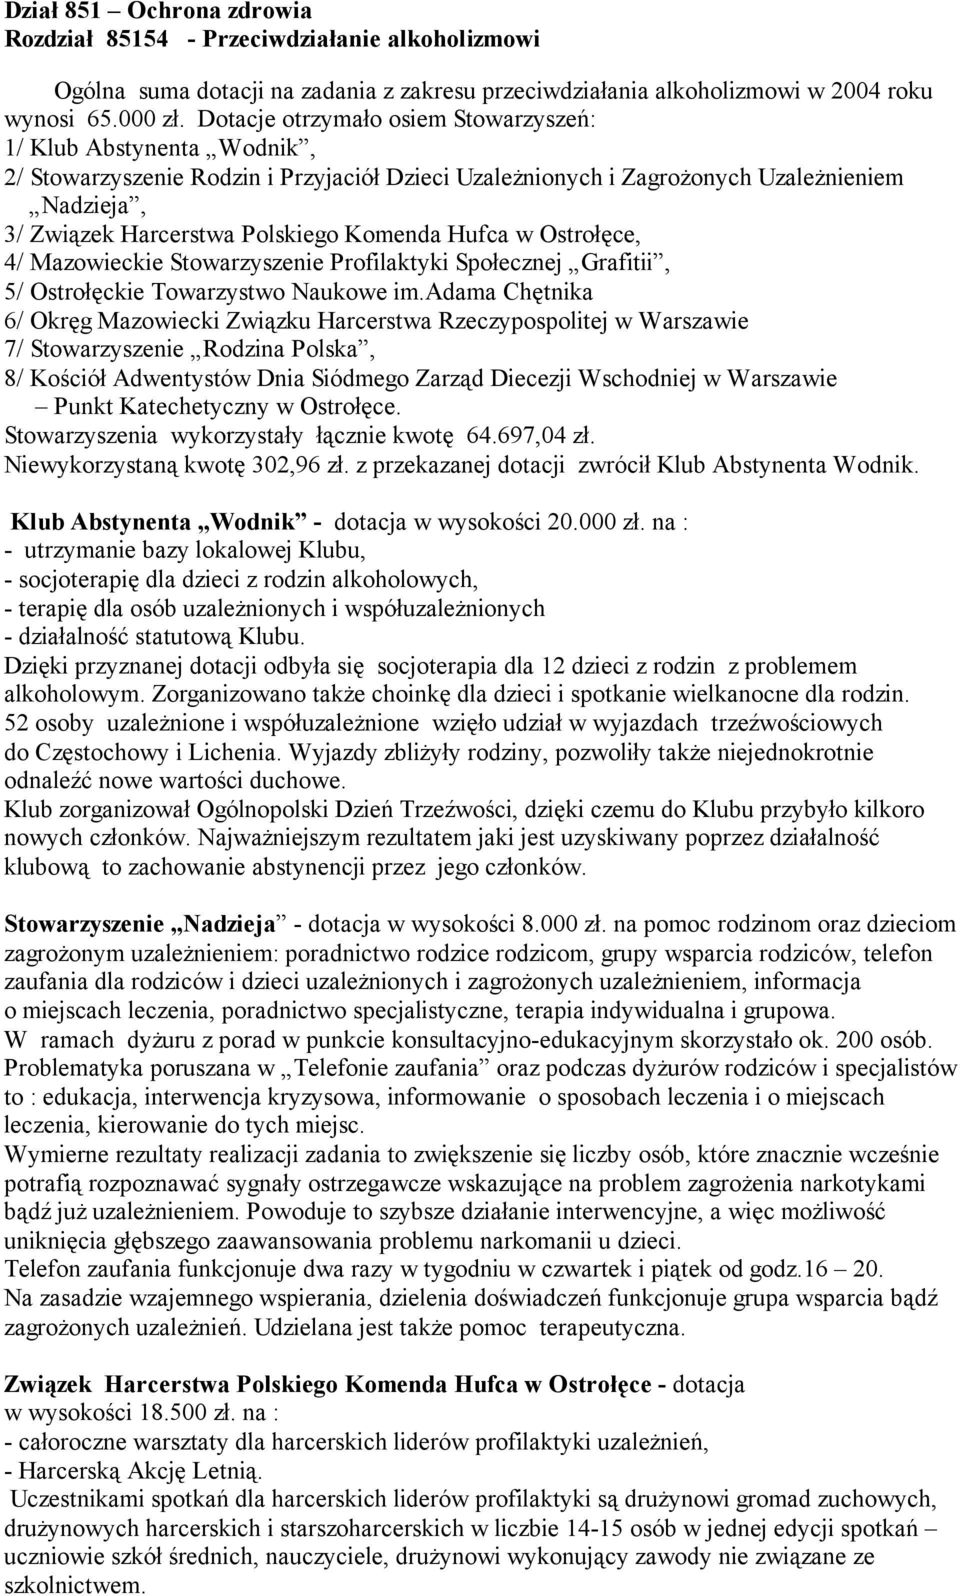 Komenda Hufca w Ostrołęce, 4/ Mazowieckie Stowarzyszenie Profilaktyki Społecznej Grafitii, 5/ Ostrołęckie Towarzystwo Naukowe im.